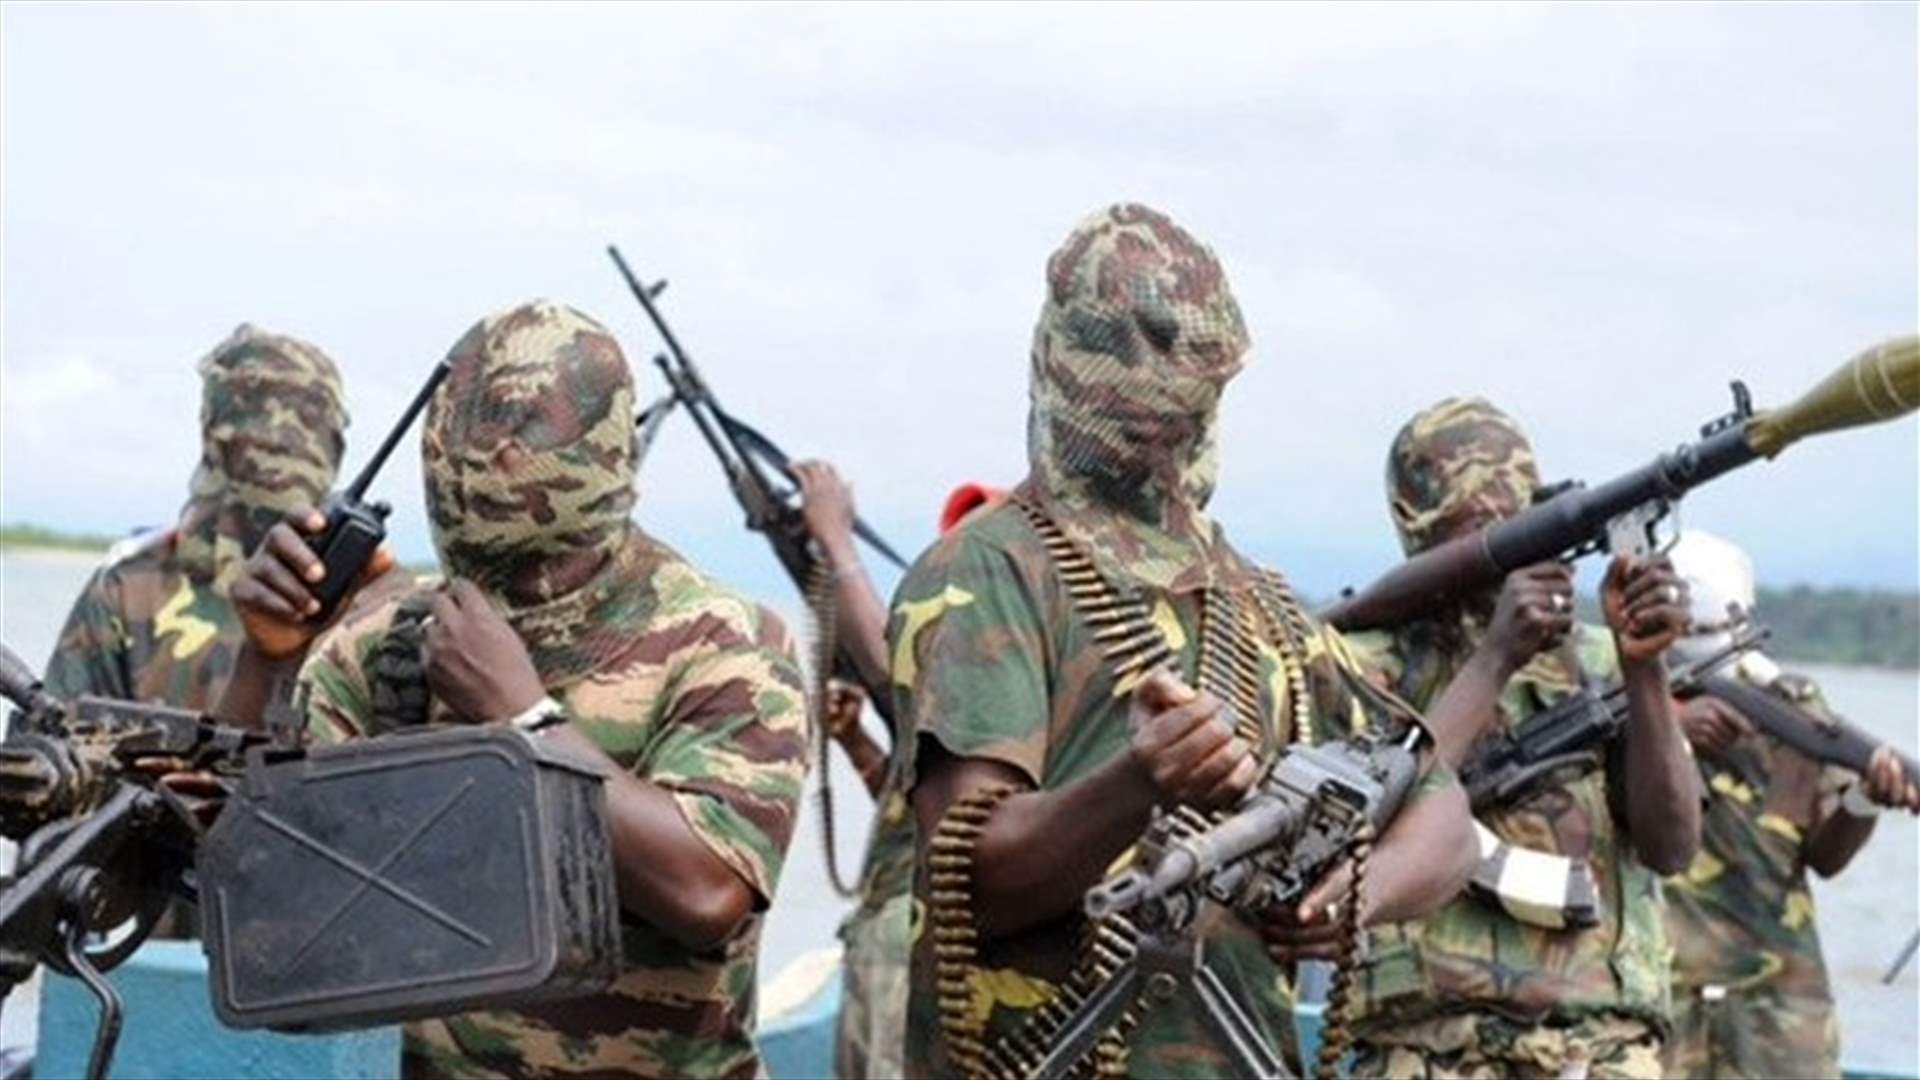 خمسة قتلى في هجوم على موكب سناتور في نيجيريا